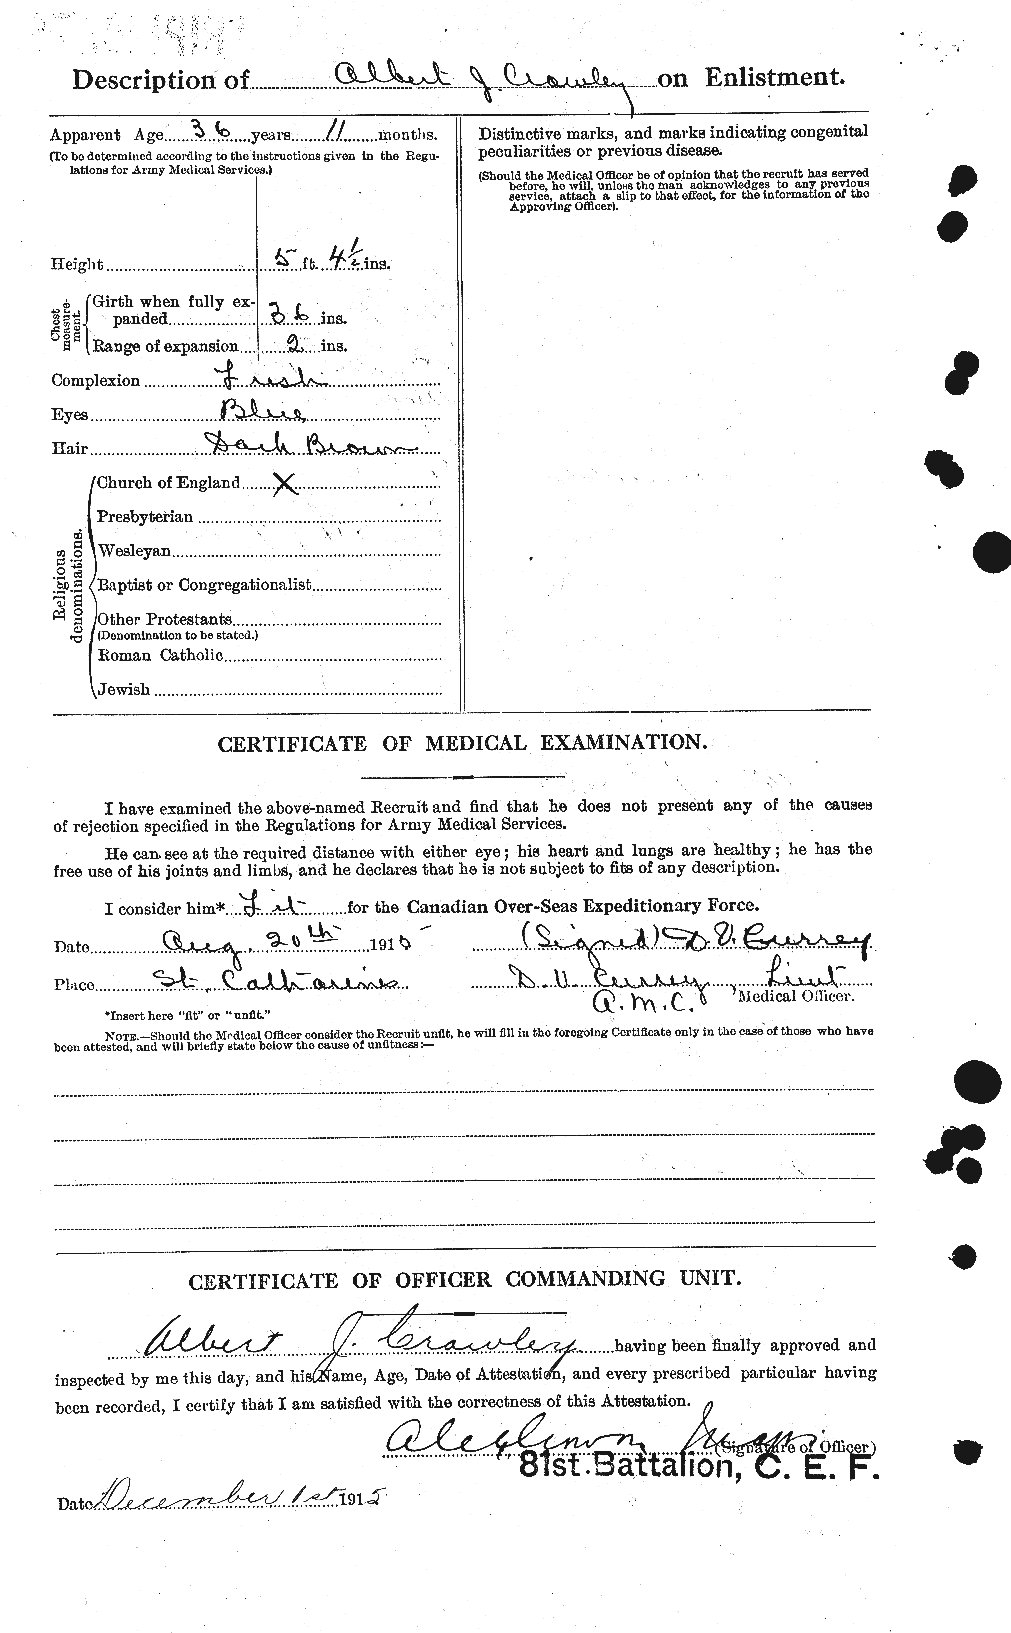 Dossiers du Personnel de la Première Guerre mondiale - CEC 060679b